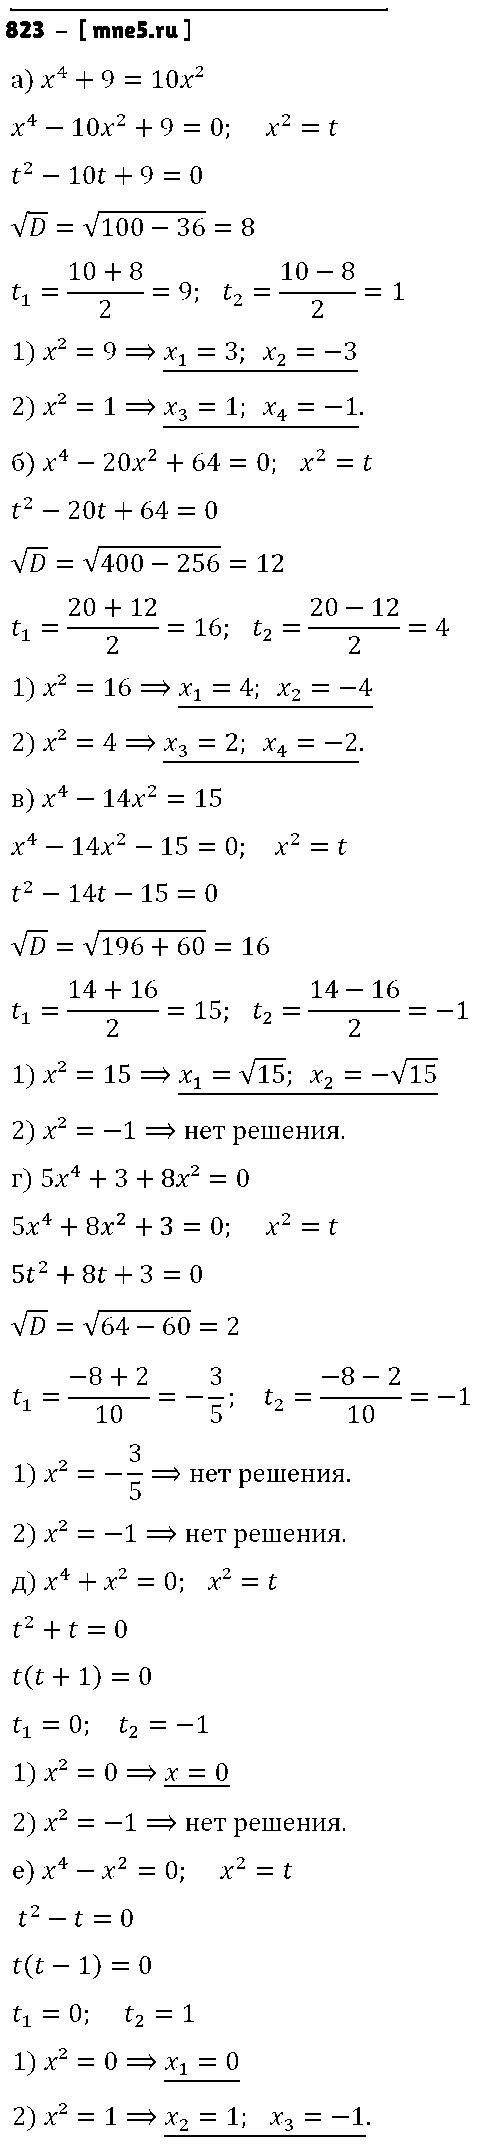 ГДЗ Алгебра 8 класс - 823